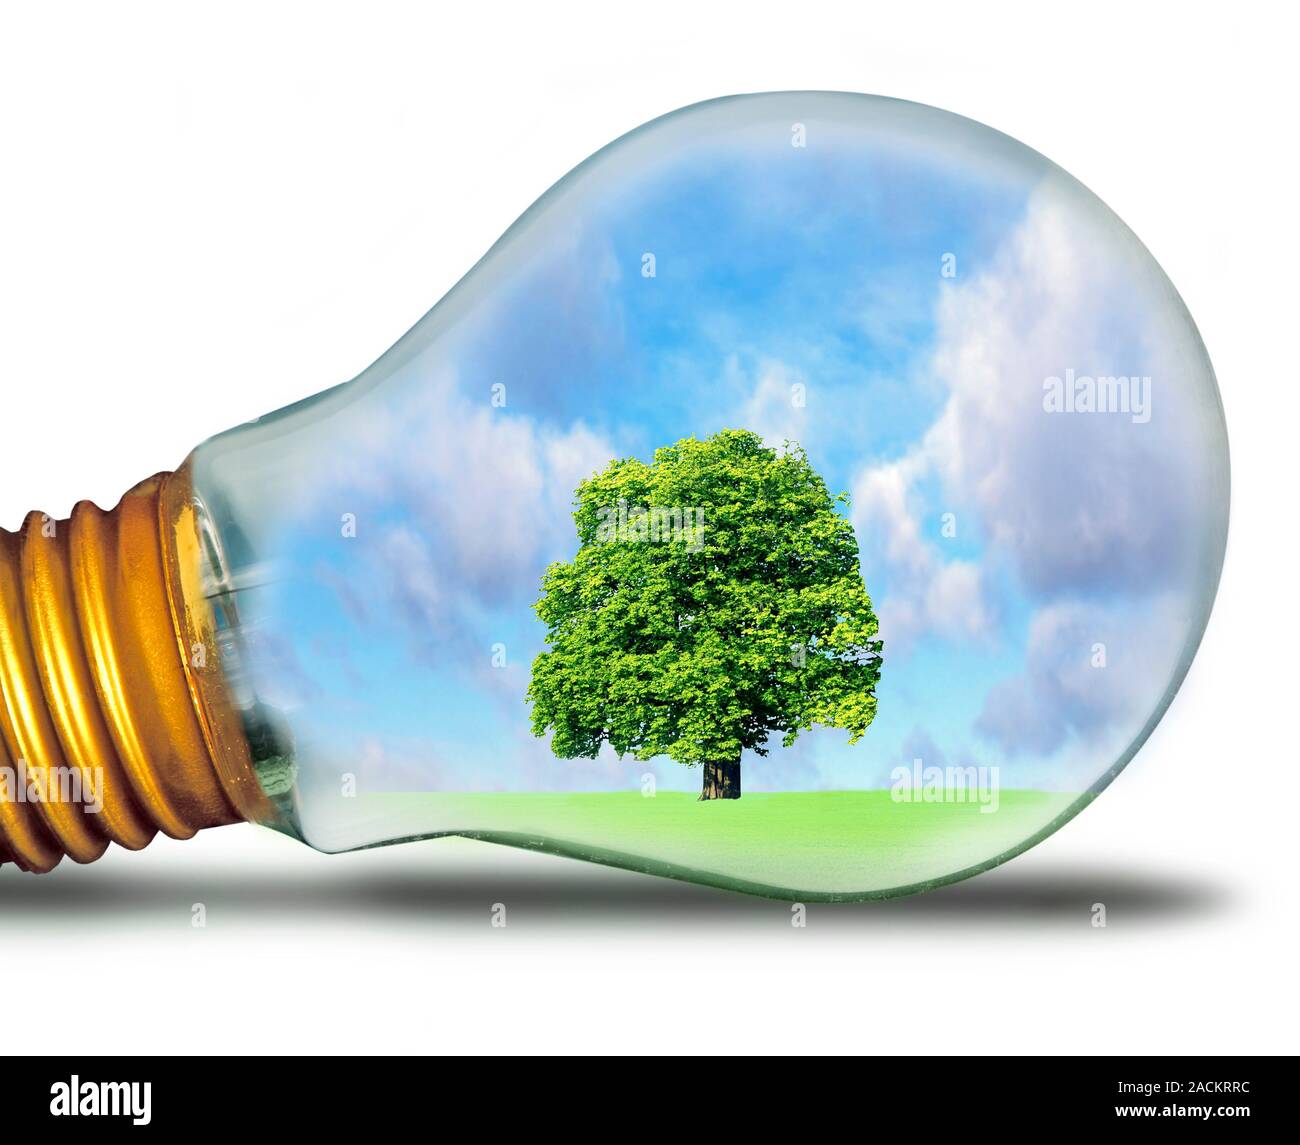 La energía sostenible. Imagen conceptual de un árbol en bombilla de luz, representando la generación sostenible de energía. es el uso de métodos para géneros Fotografía de stock - Alamy